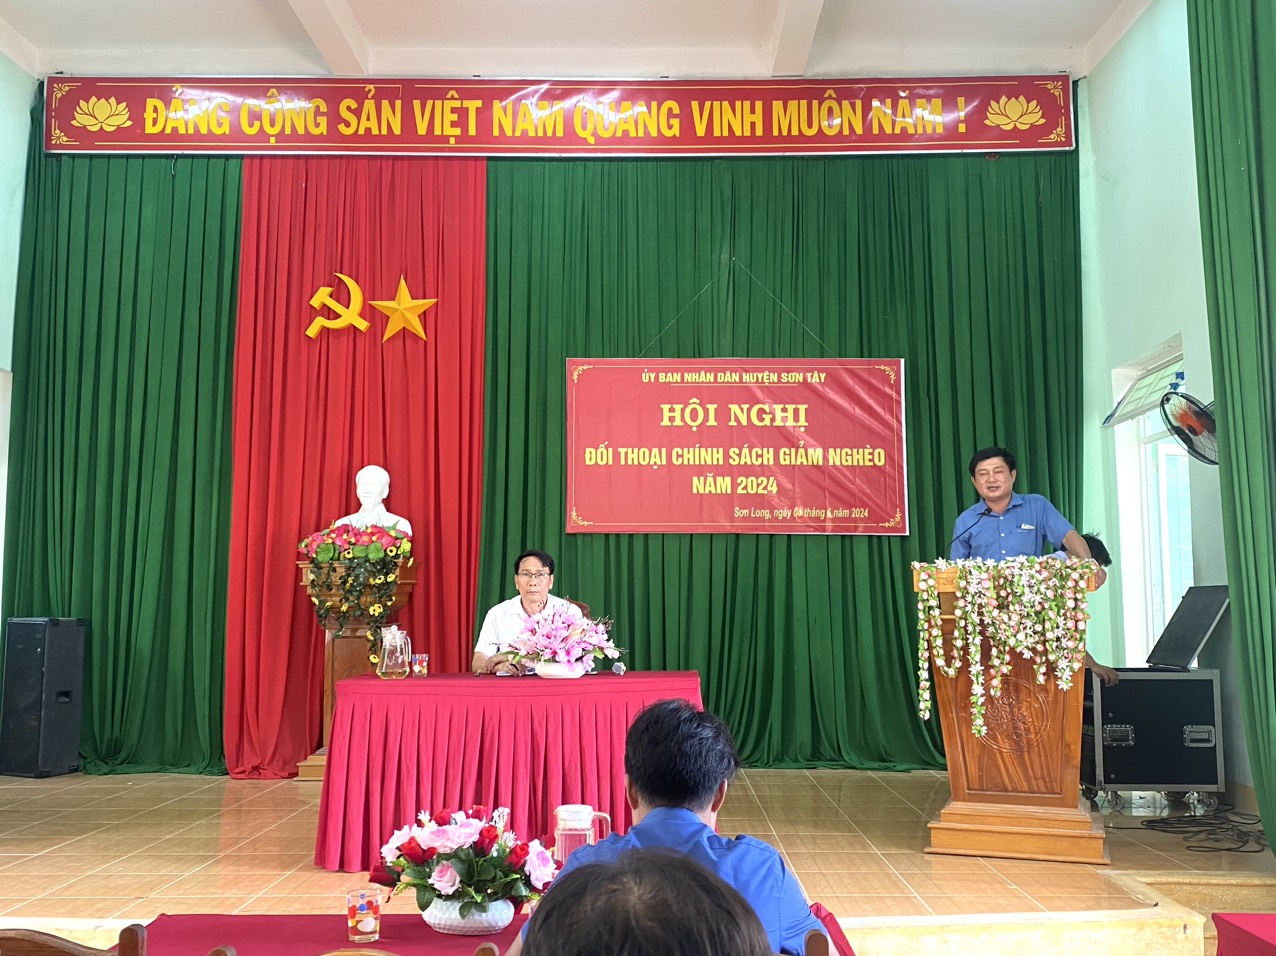 Chiều ngày 04/6/2024, Ủy ban Nhân dân huyện Sơn Tây tổ chức đối thoại chính sách giảm nghèo năm 2024 với Nhân dân xã Sơn Long.